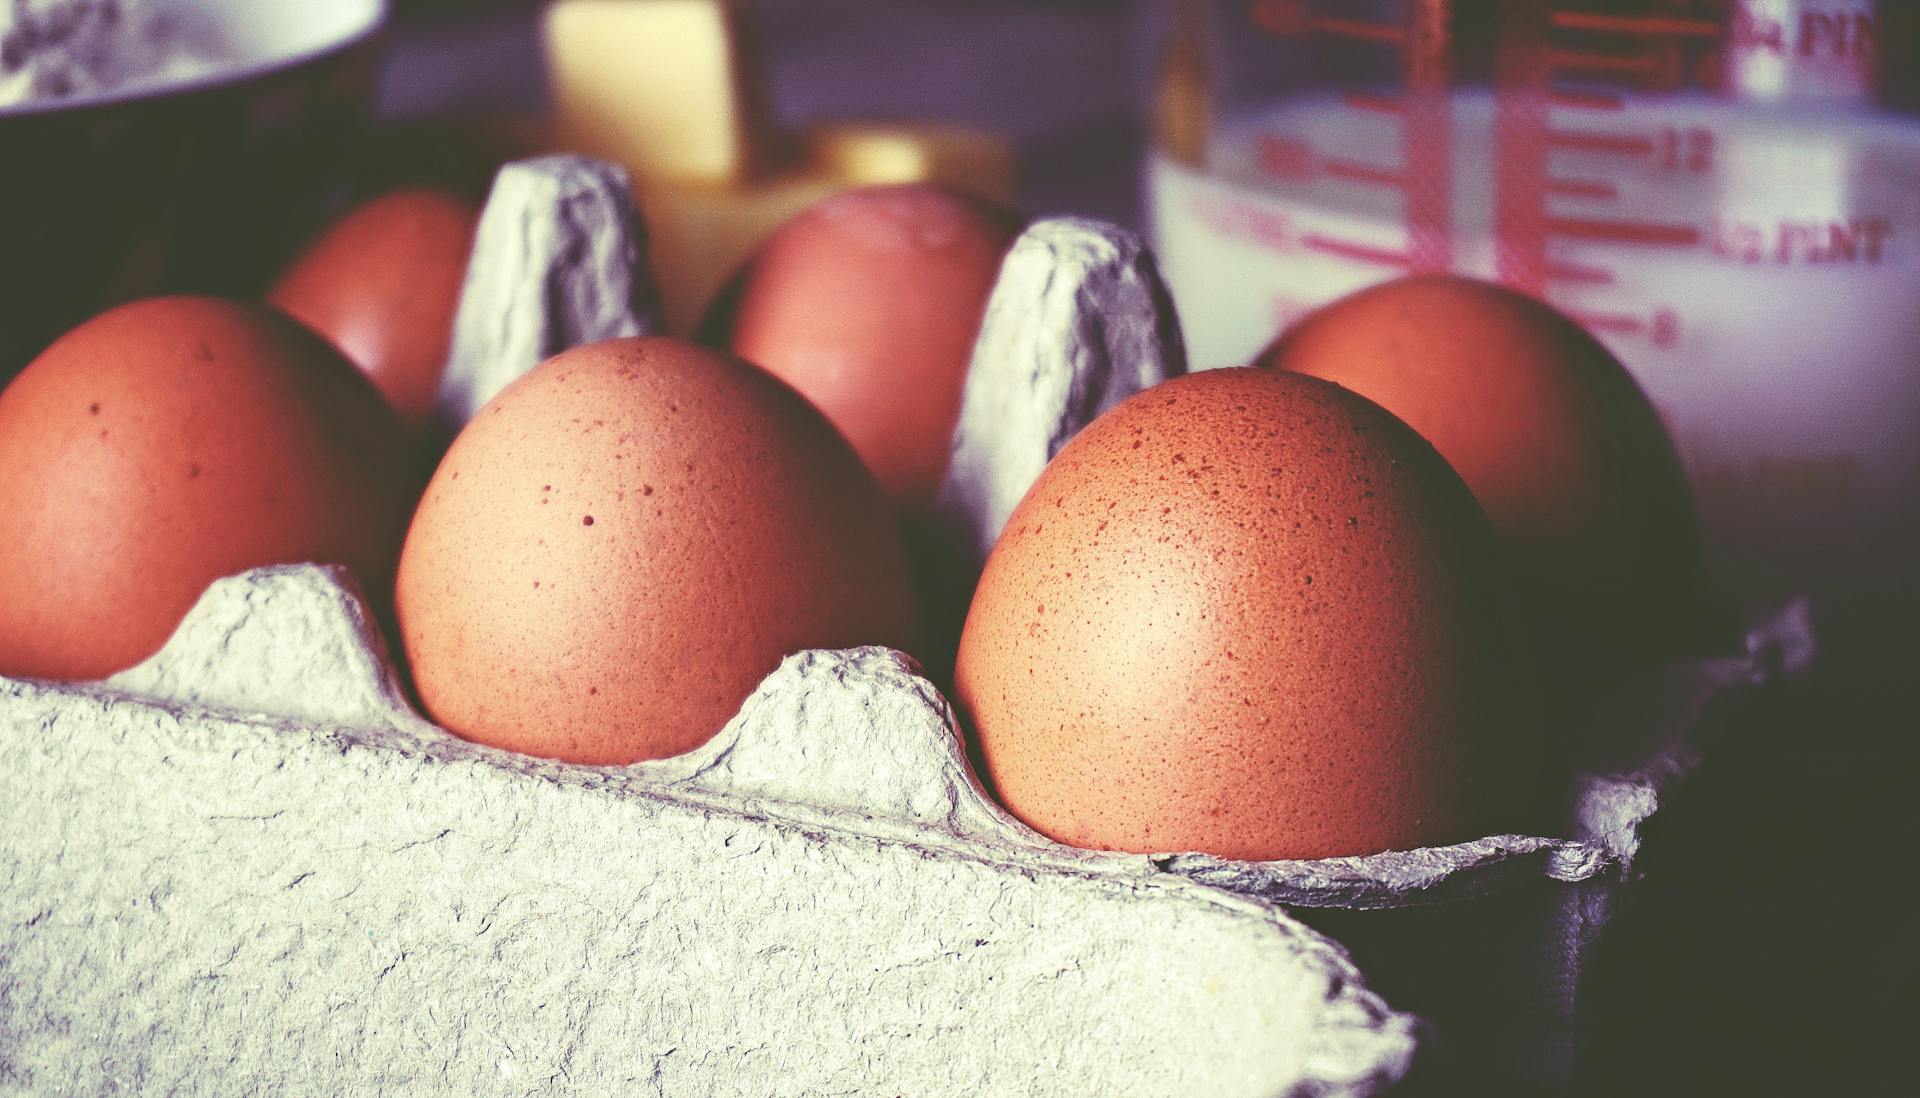 A carton of eggs | Source: Pexels